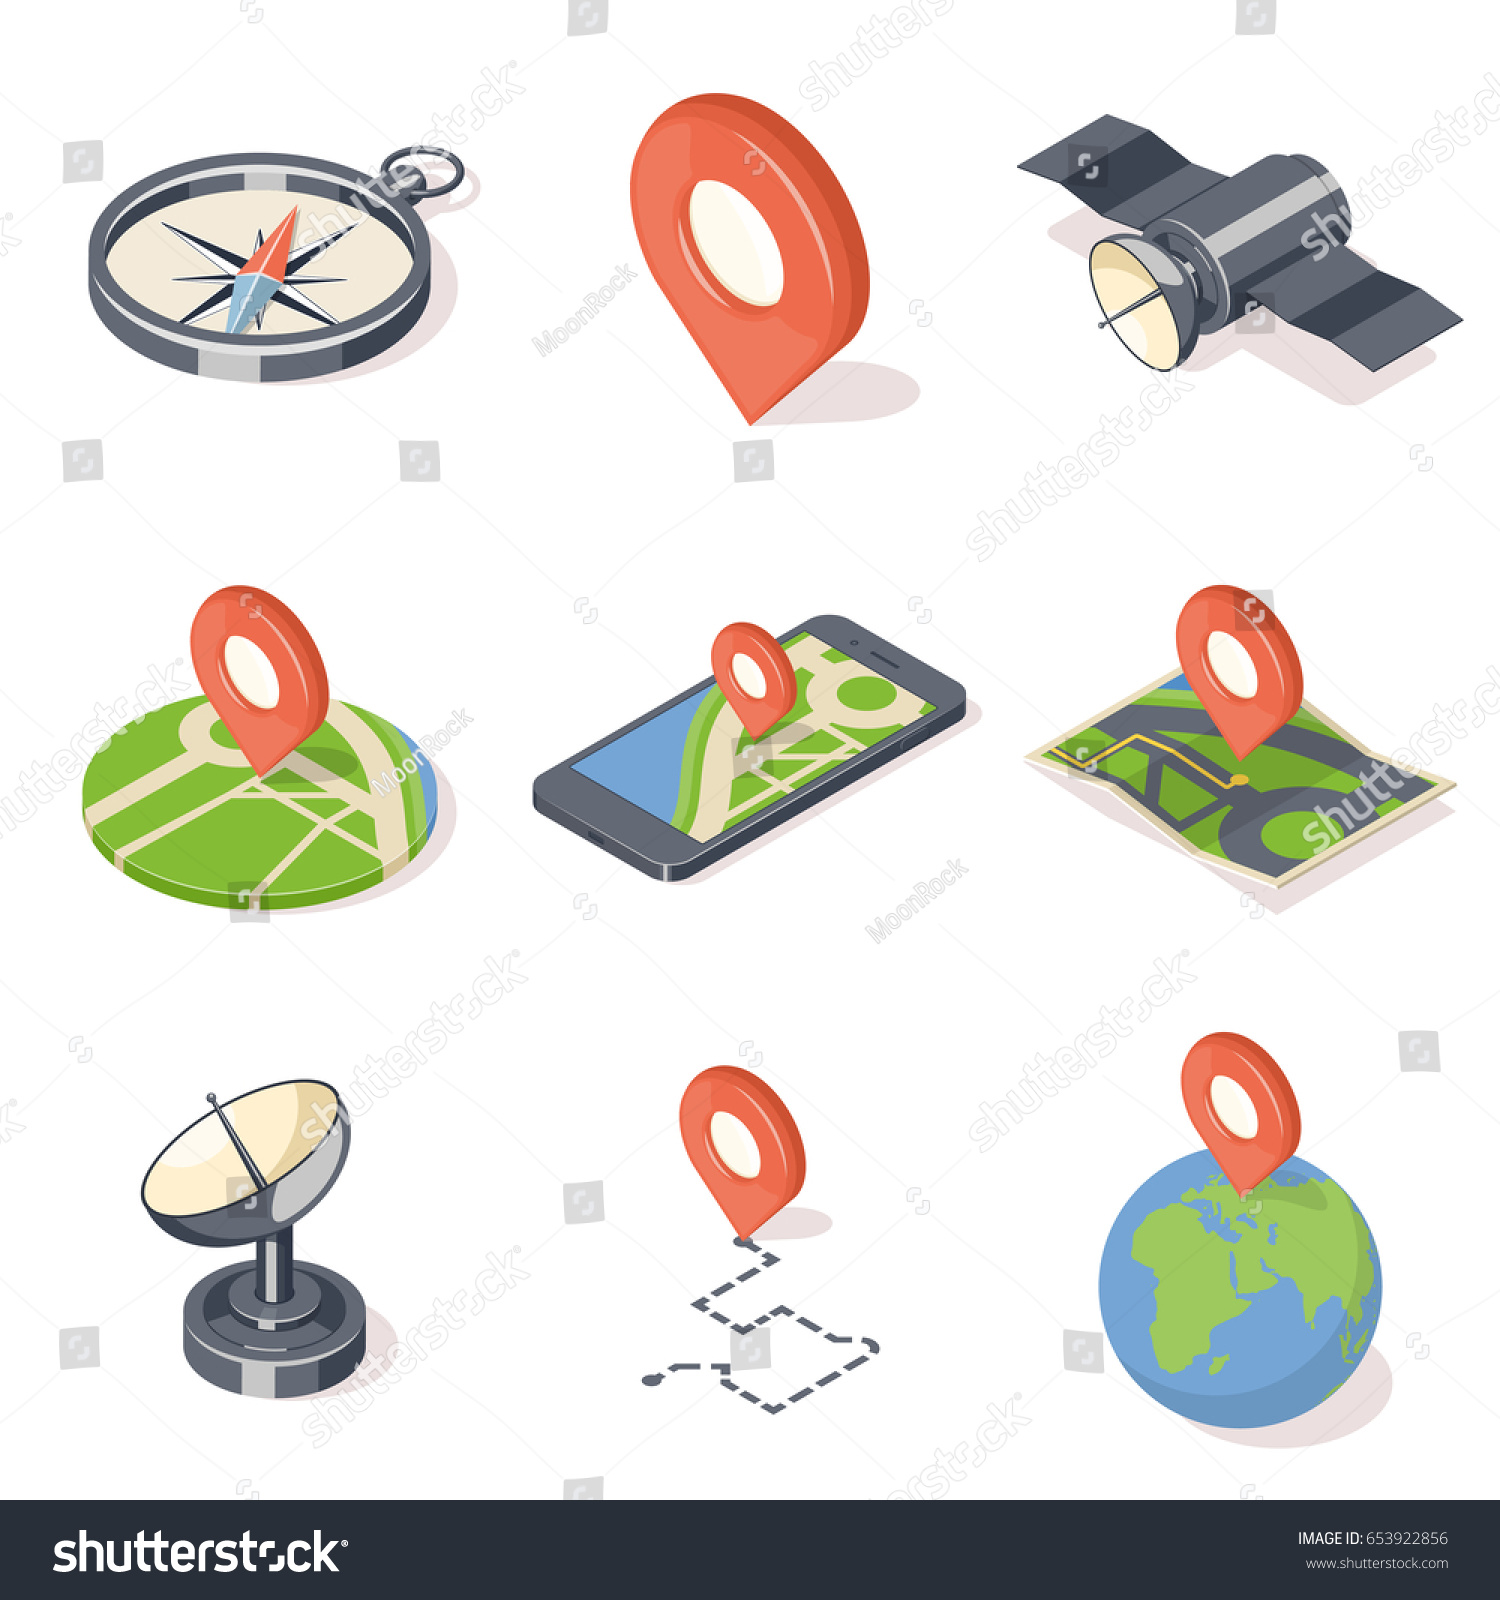 GPS navigation icons set isolated on white background. Isometric vector illustration
 #653922856